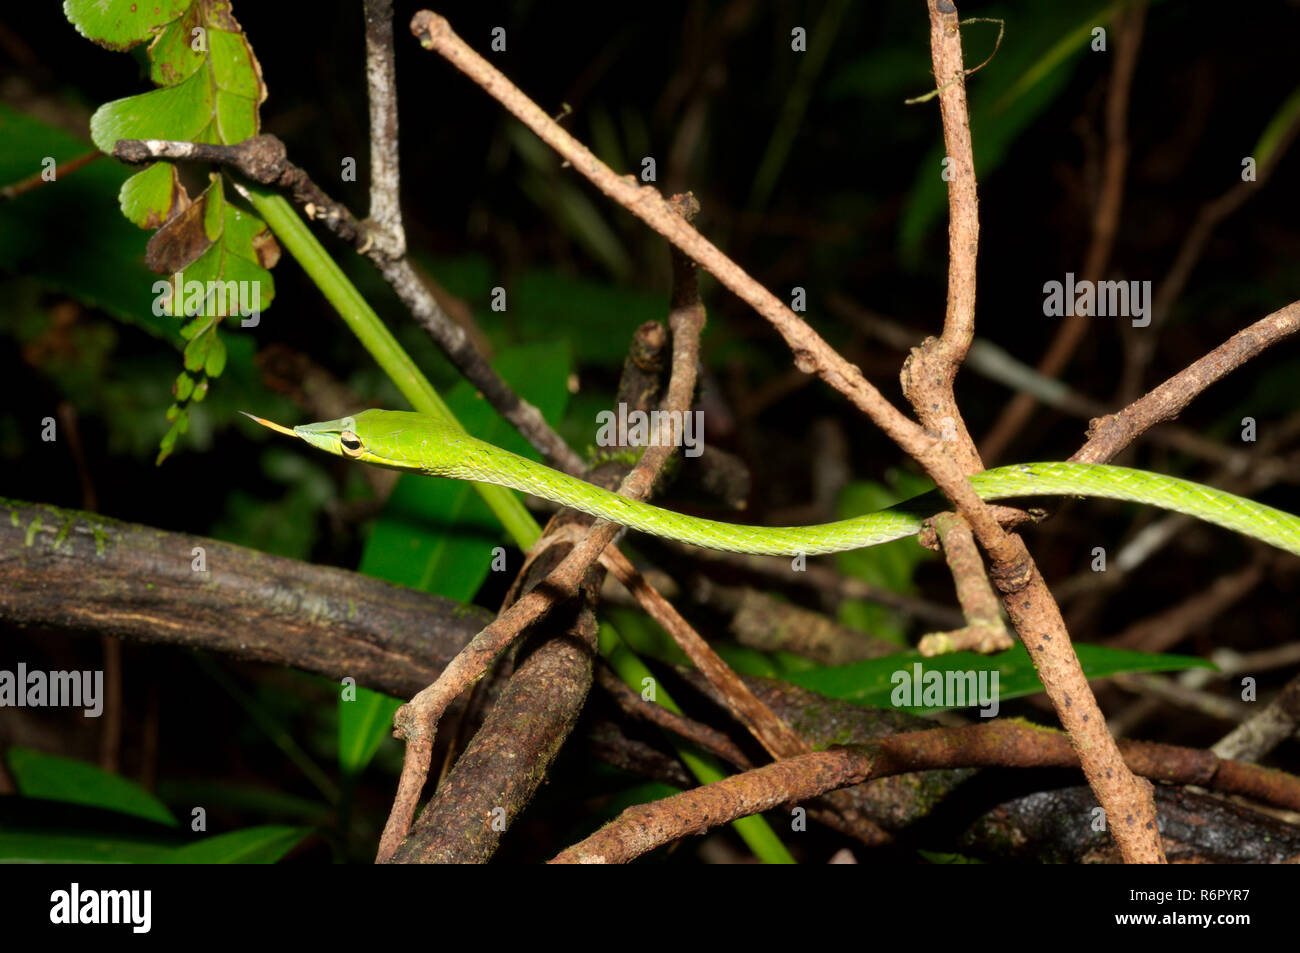 A becco lungo serpente ad albero, vitigno verde serpente a becco lungo serpente frusta o Asian vine snake (Ahaetulla nasuta) riserva forestale di Sinharaja, parco nazionale, Sinhara Foto Stock